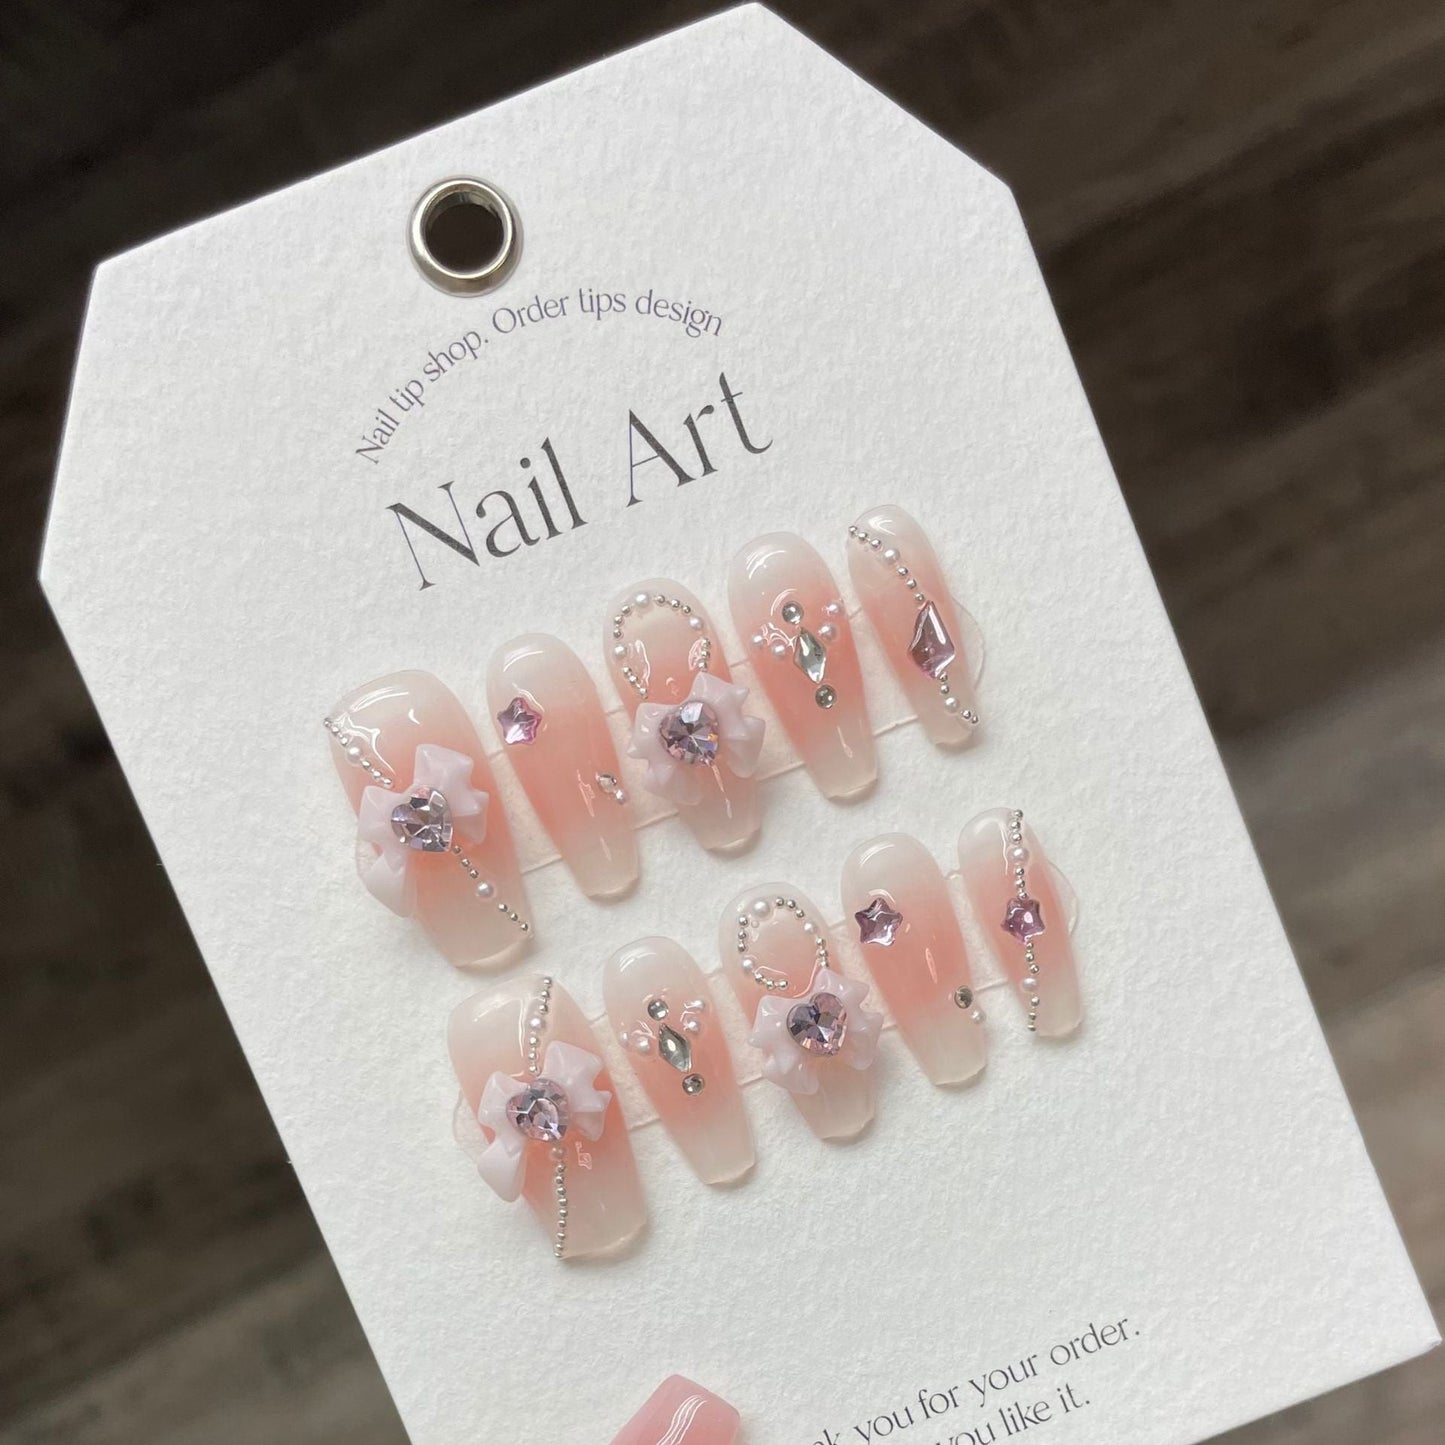 968 princess style press on nails 100% handmade false nails pink